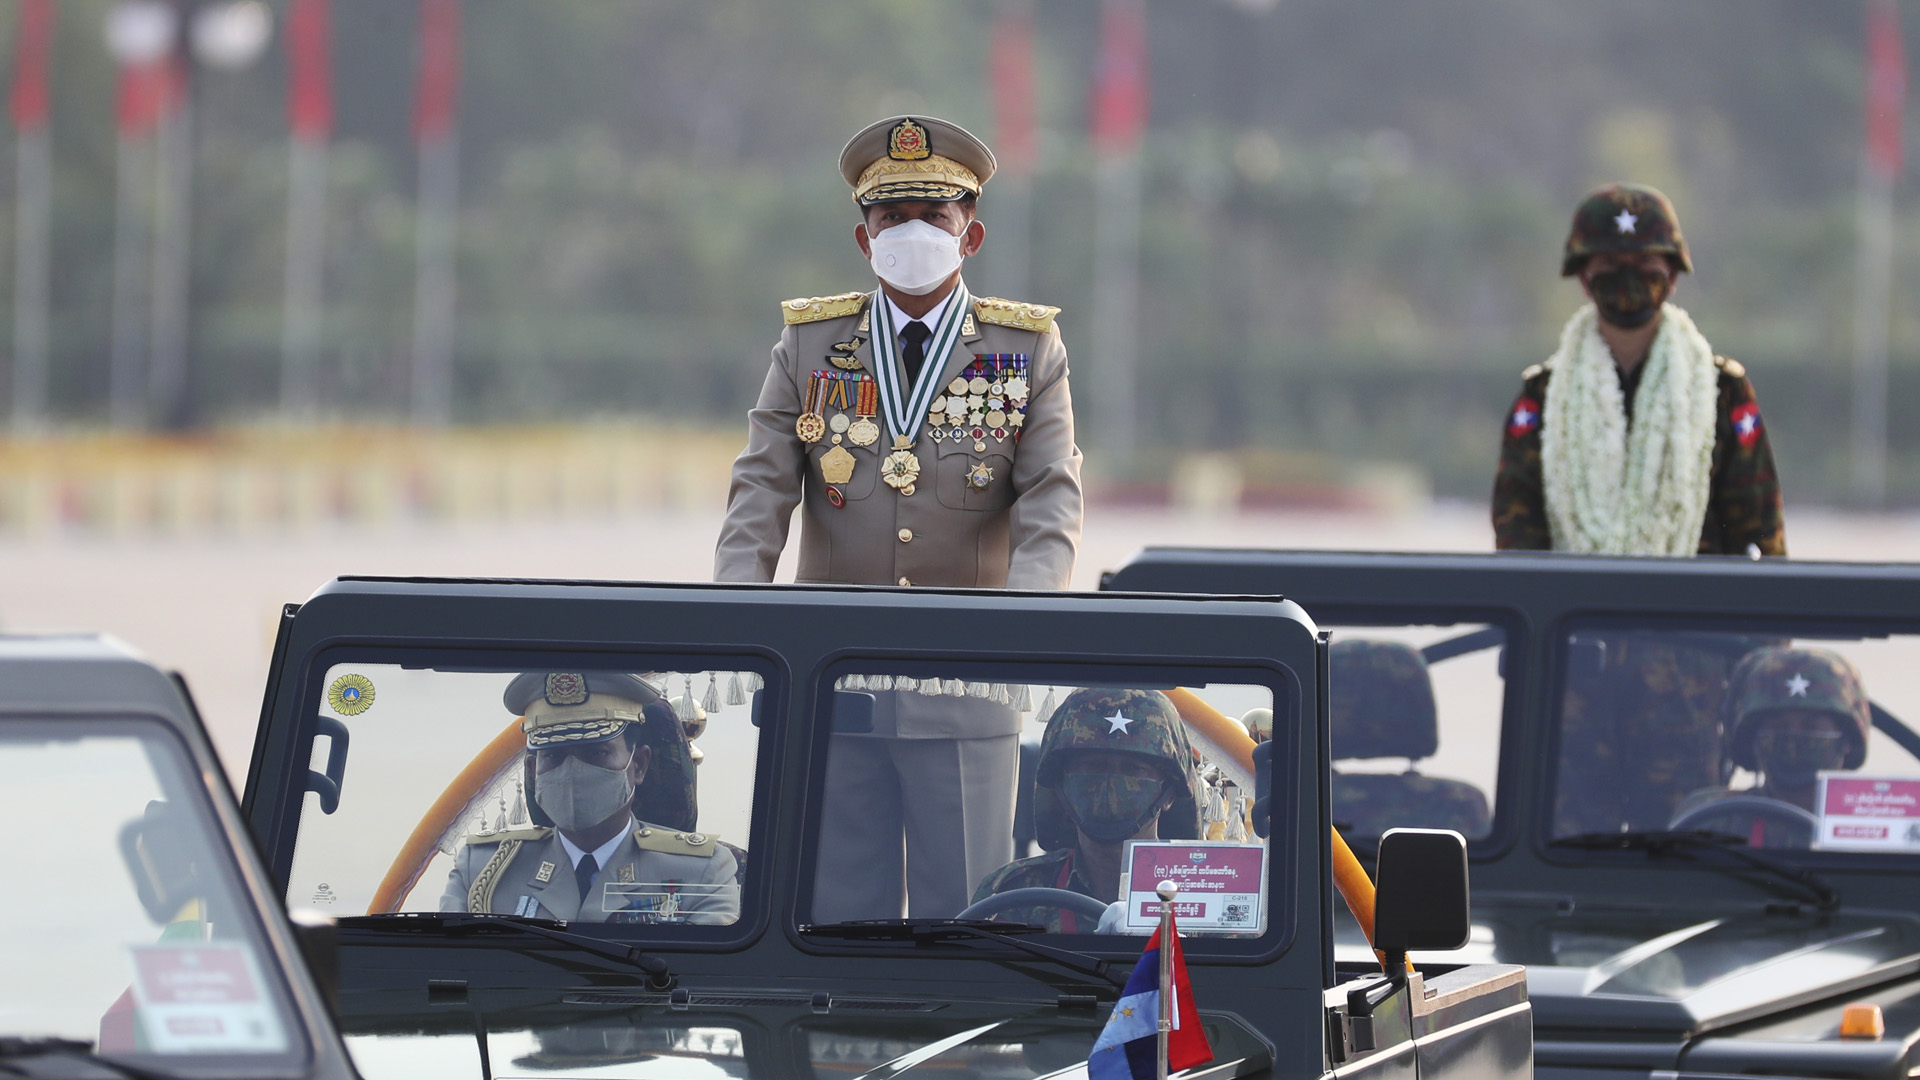 Min Aung Hlaing fährt in Uniform eines Generals in einem offenen Militär-Auto. | picture alliance / ASSOCIATED PR